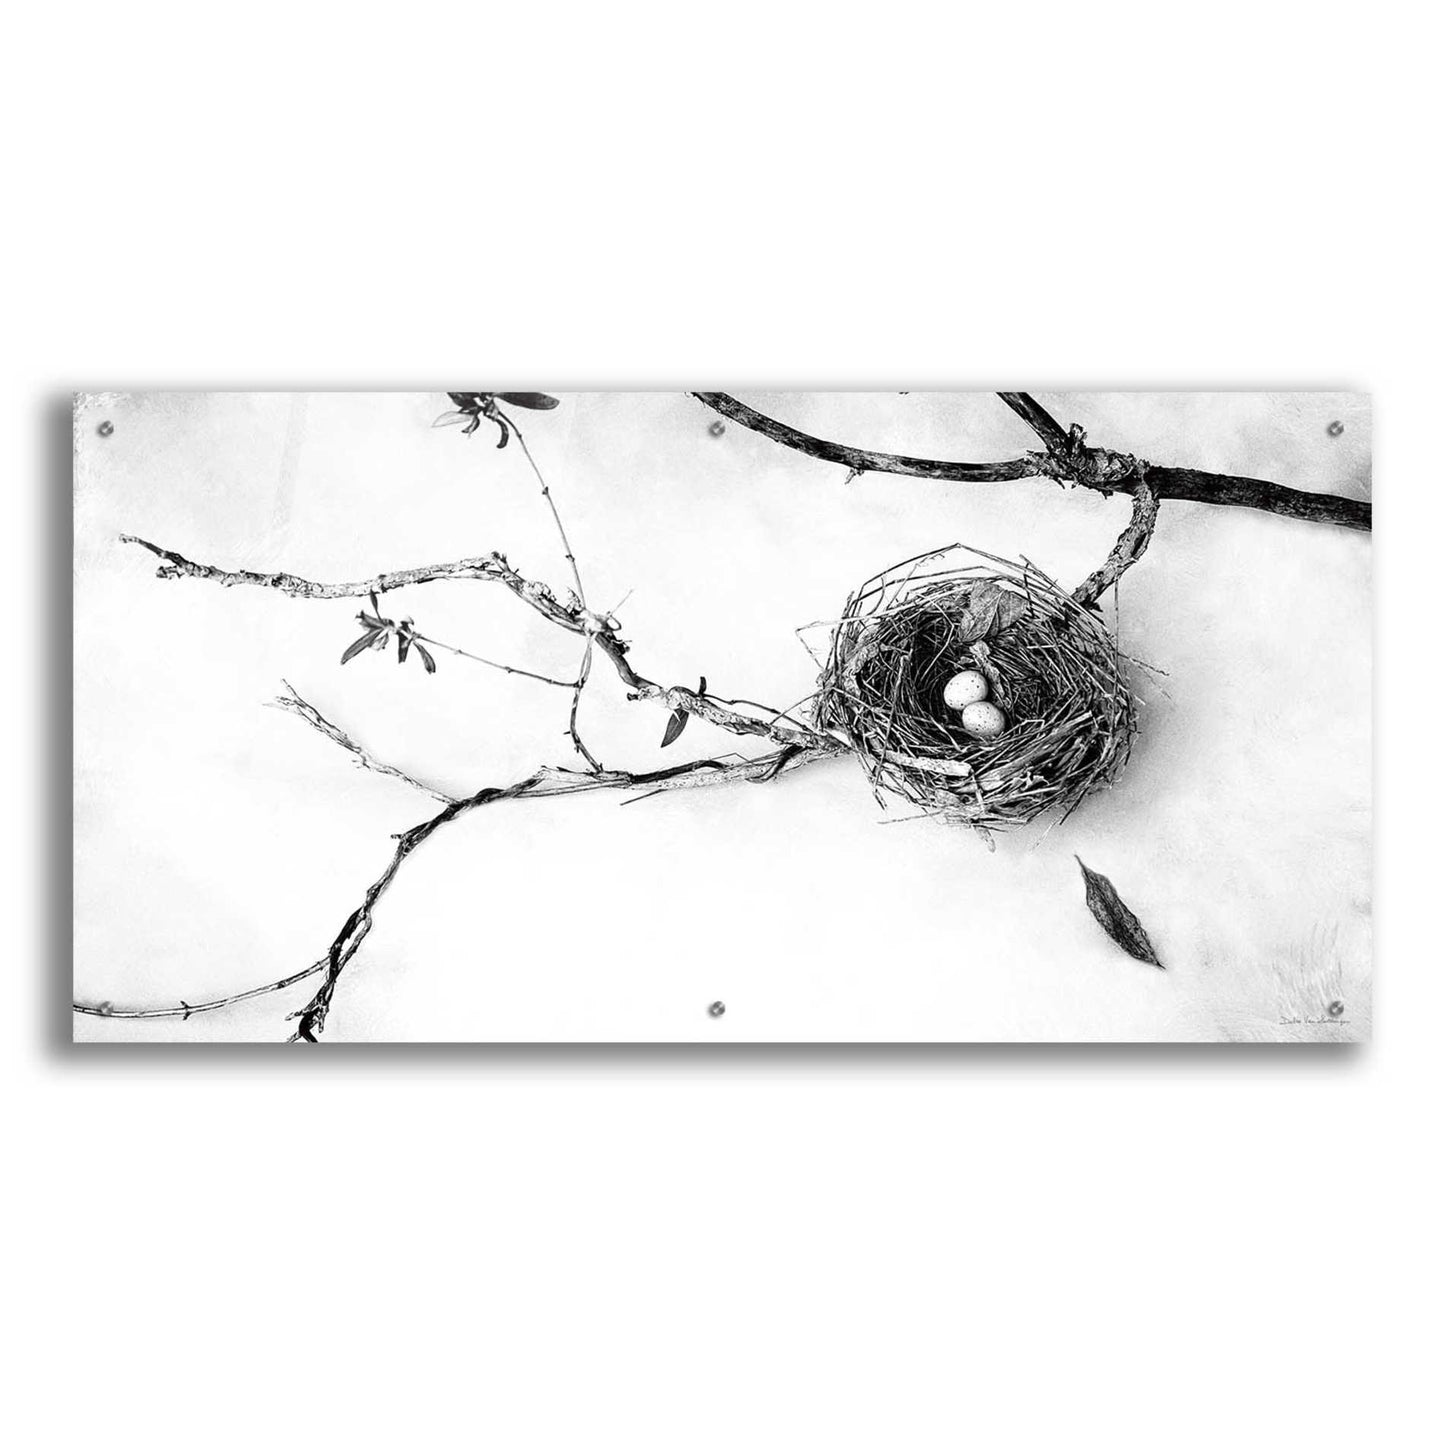 Epic Art 'Nest and Branch II' by Debra Van Swearingen, Acrylic Glass Wall Art,48x24